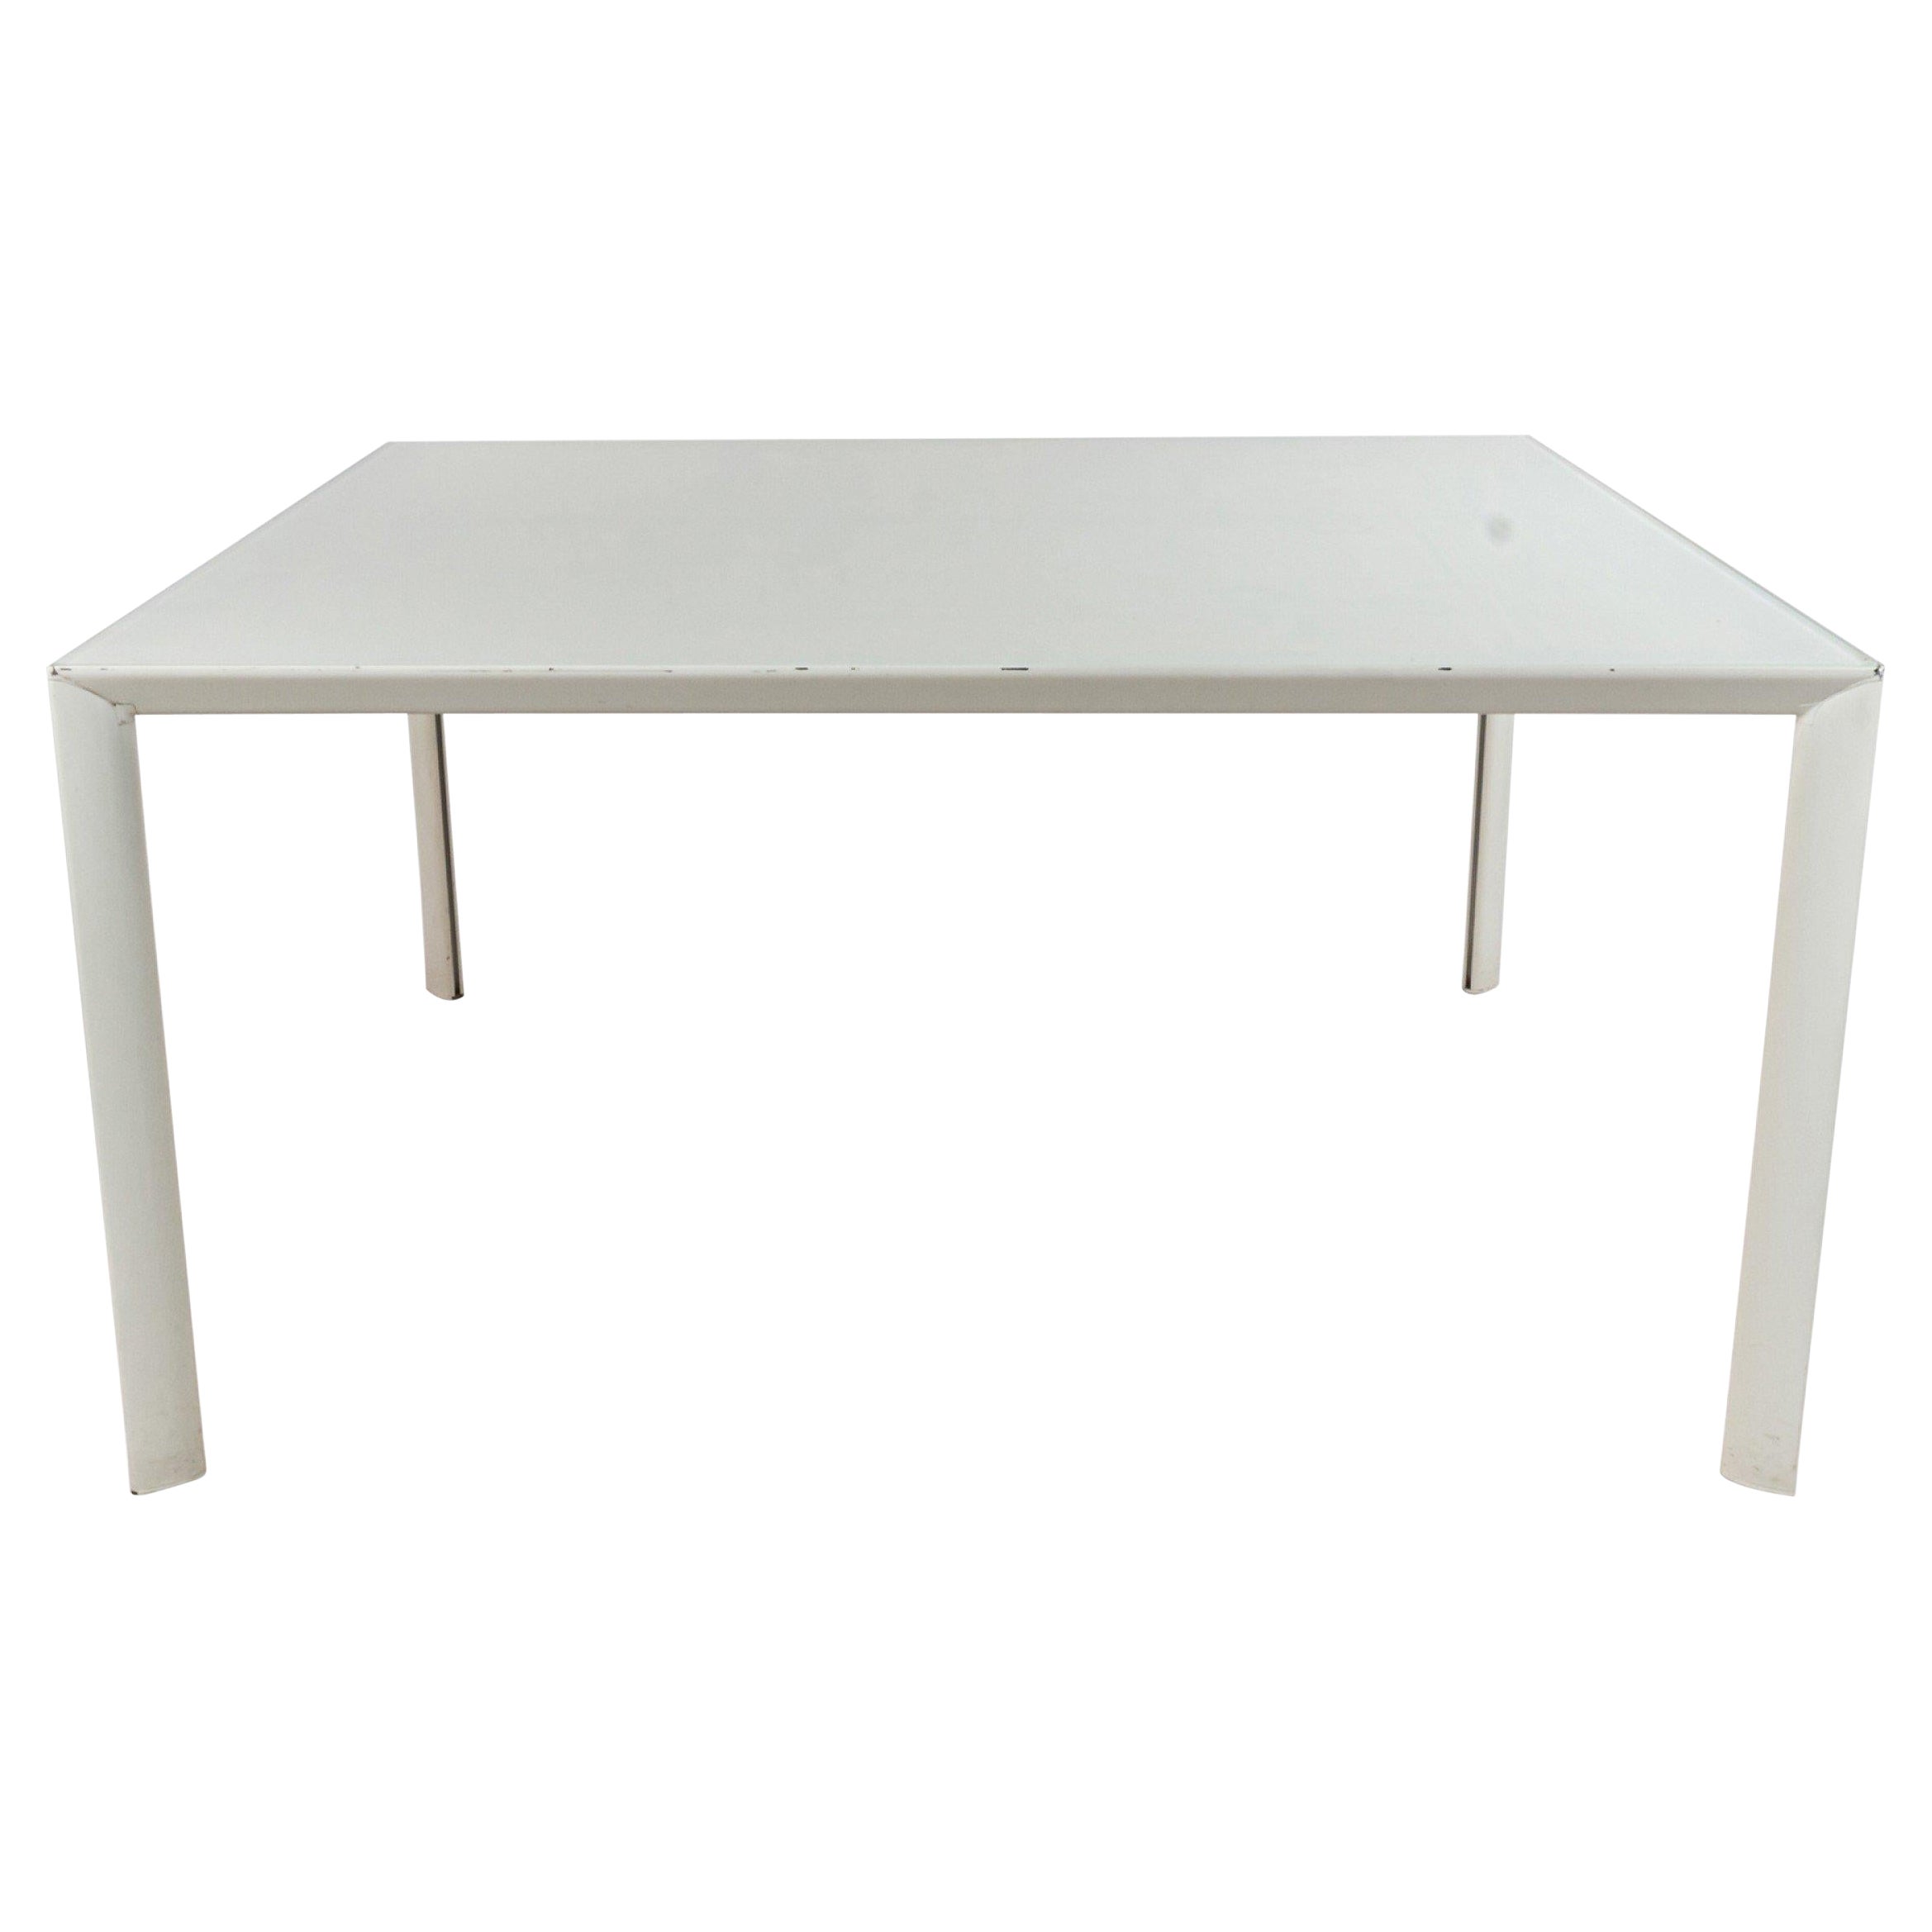 Tables de travail carrées contemporaines en métal blanc en vente